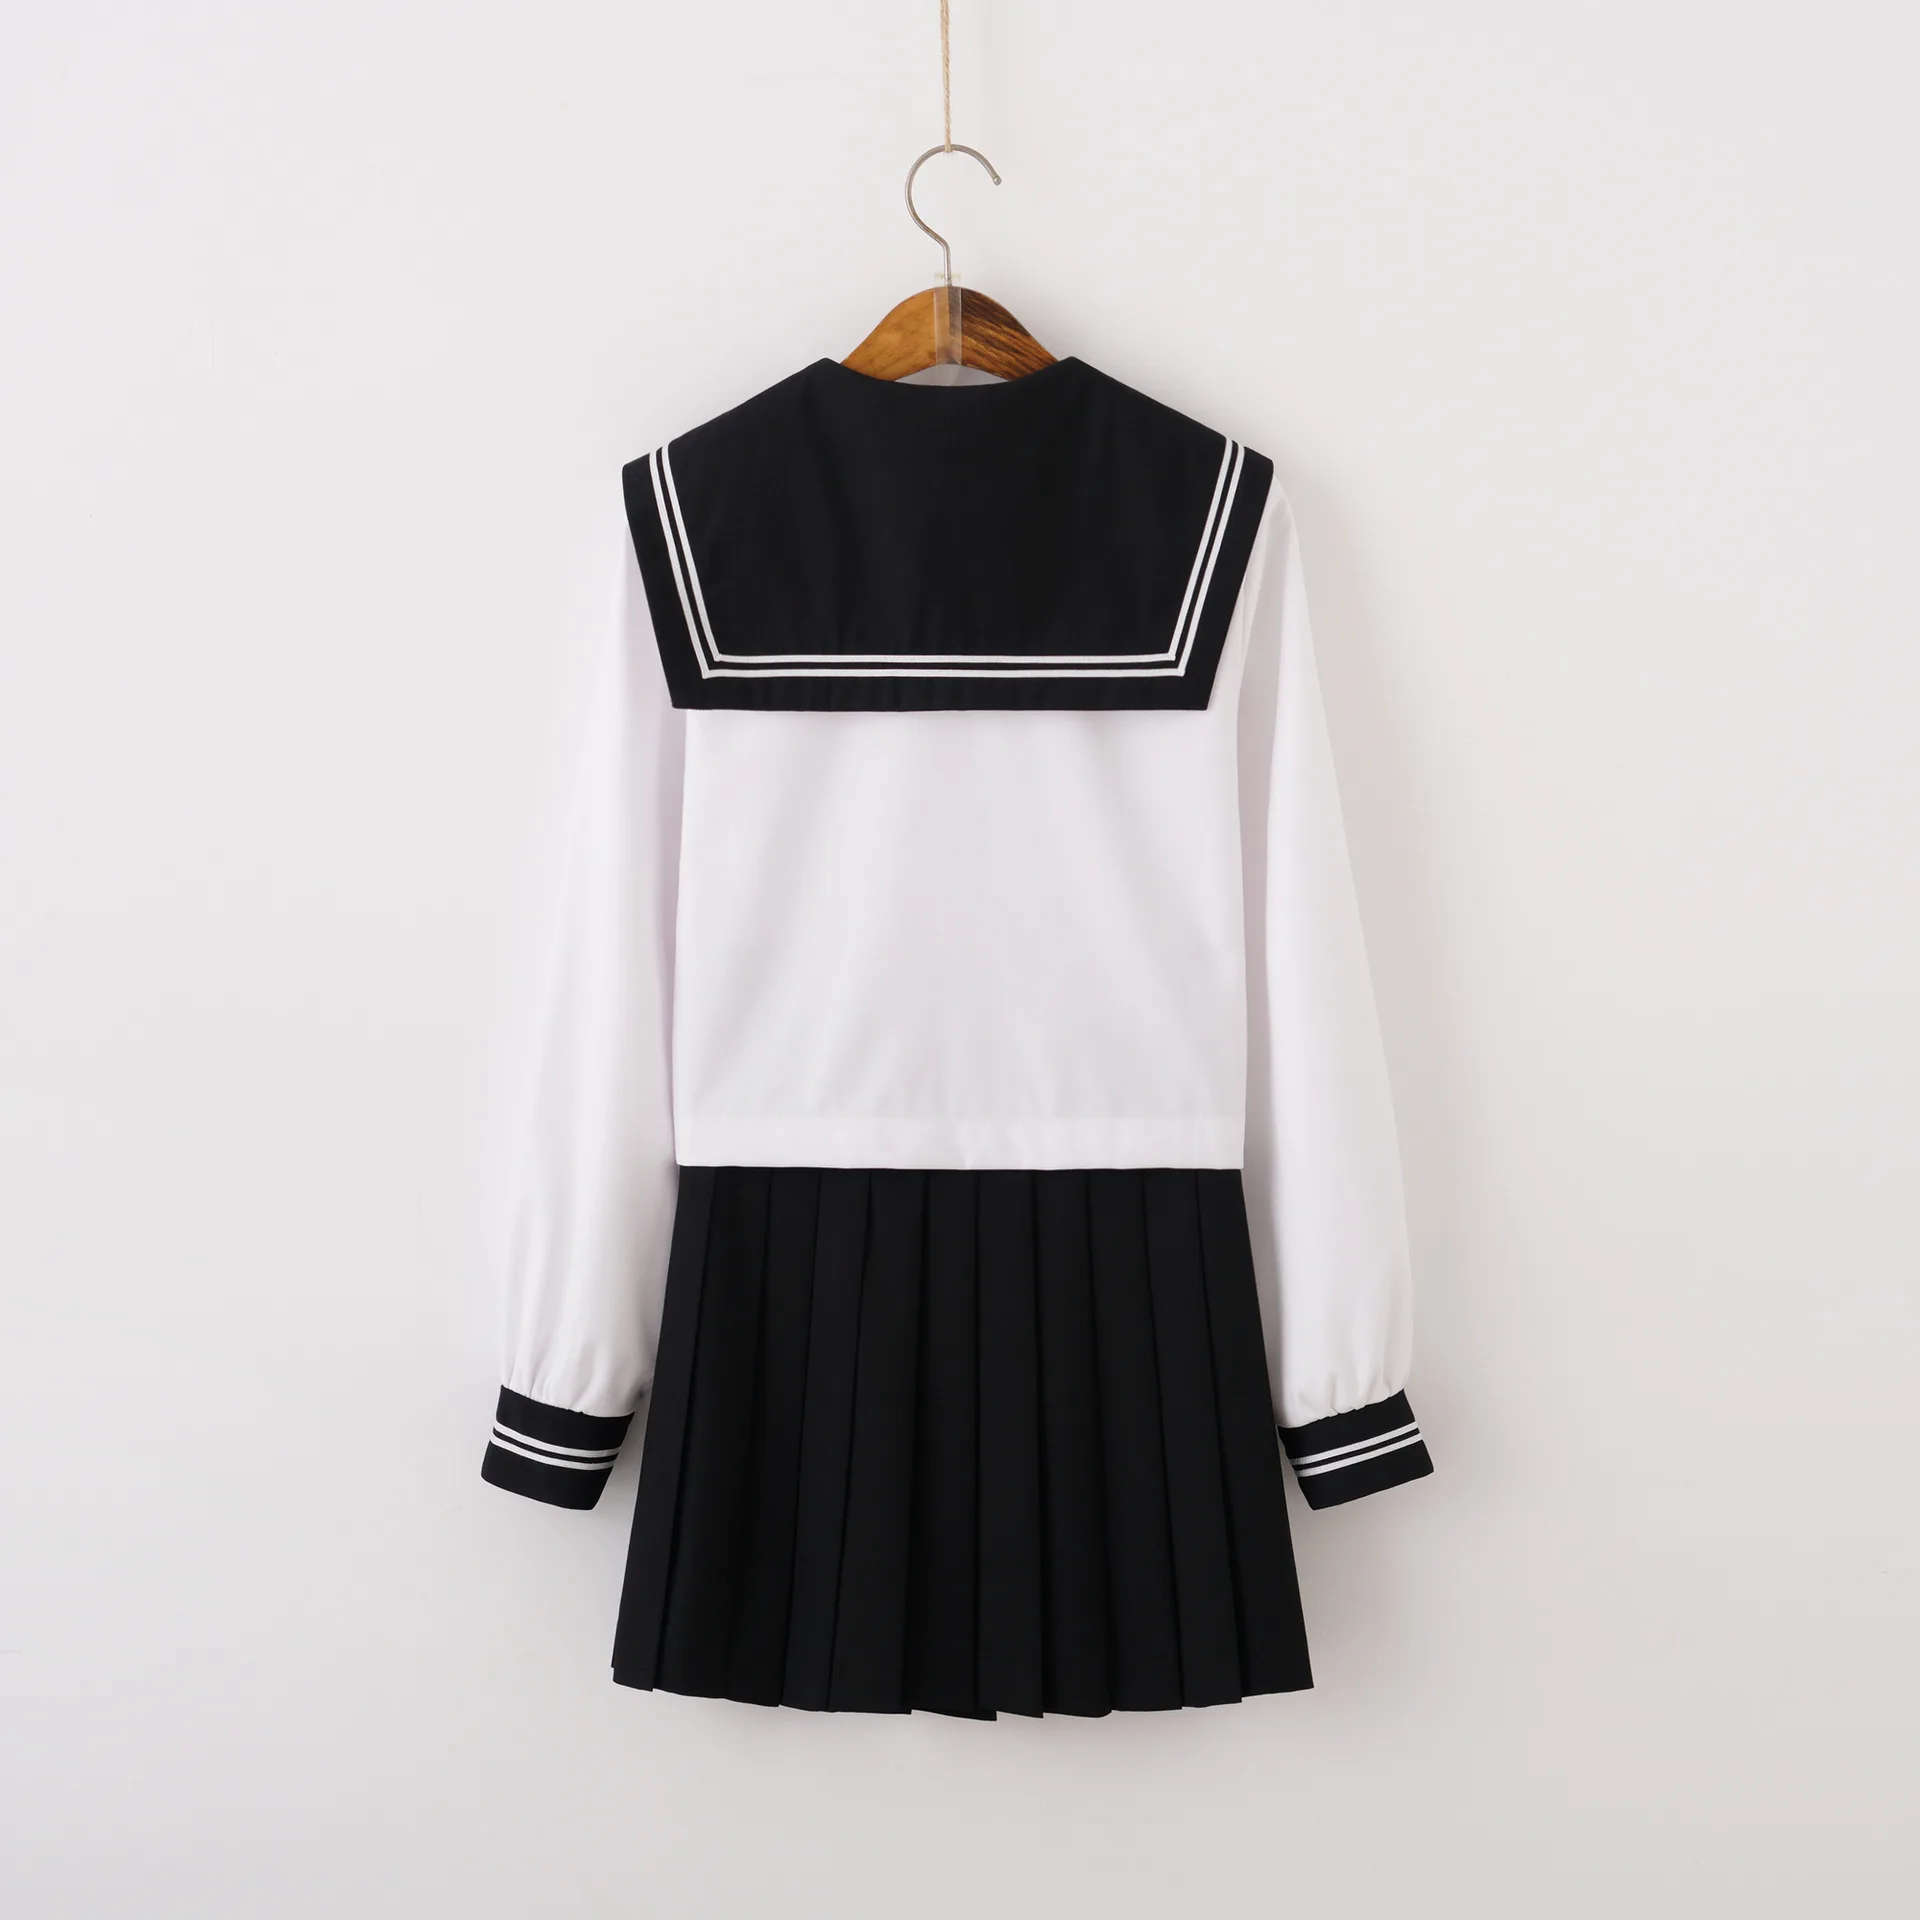 Осень, японская школьная форма, милые костюмы моряка для девочек, белые топы, черная плиссированная юбка, красные комплекты с галстуком-бабочкой, костюмы для косплея Jk